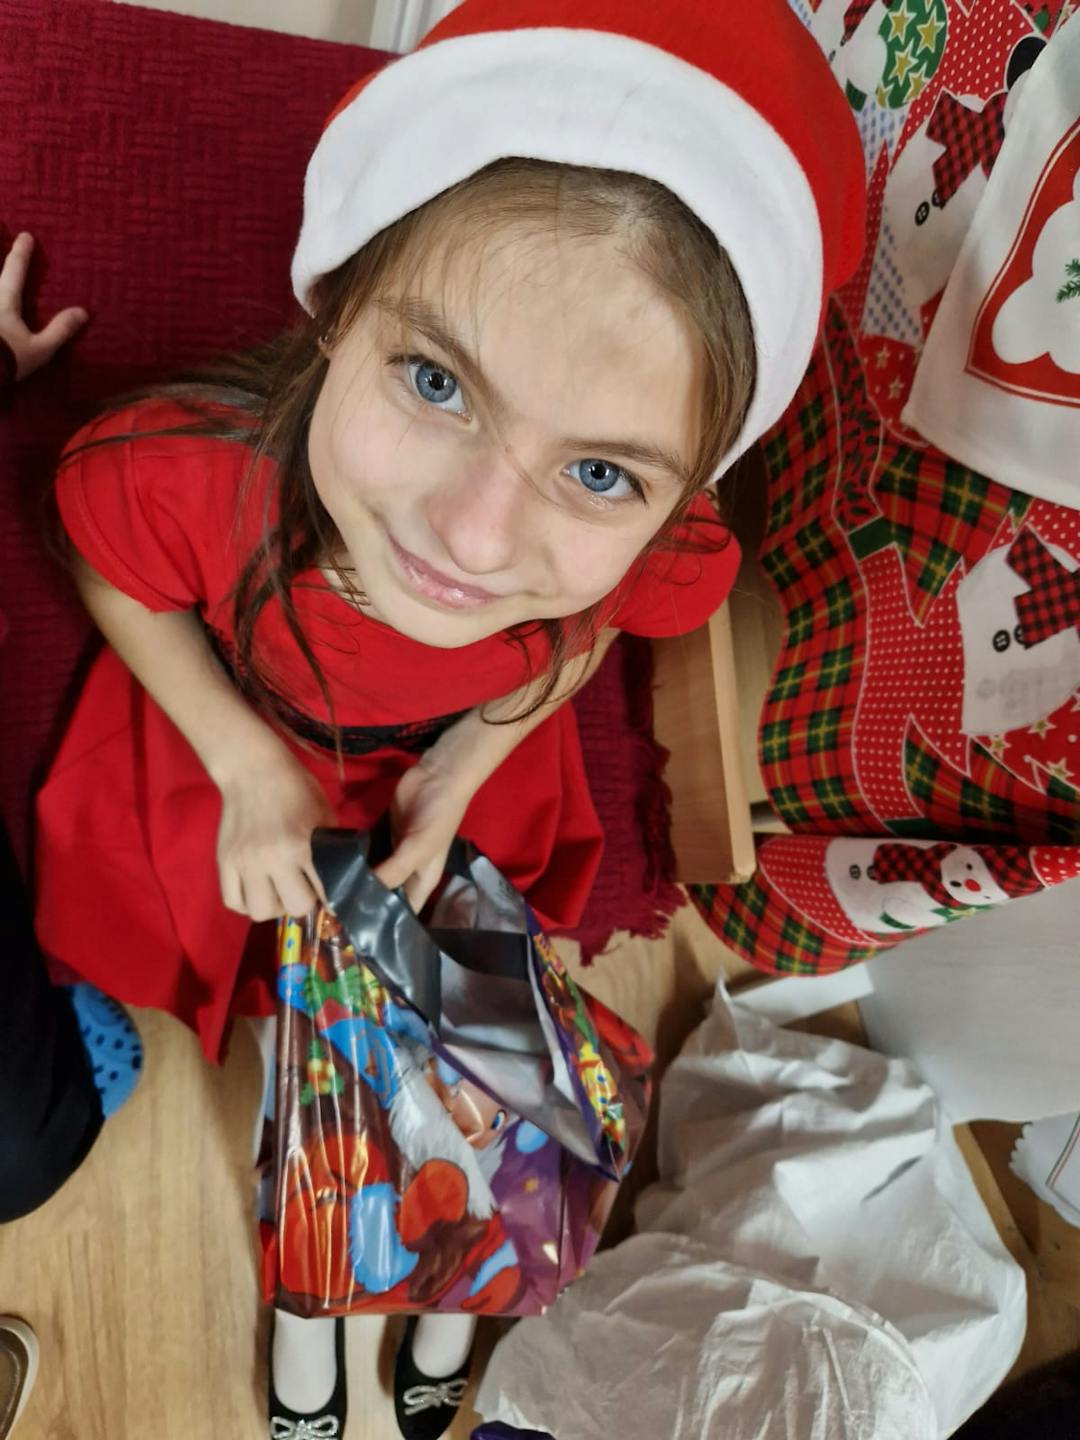 Niezapomniane spotkanie z Mikołajem! | Dziewczynka w czapce mikołaja uśmiecha sie do kamery.jpg